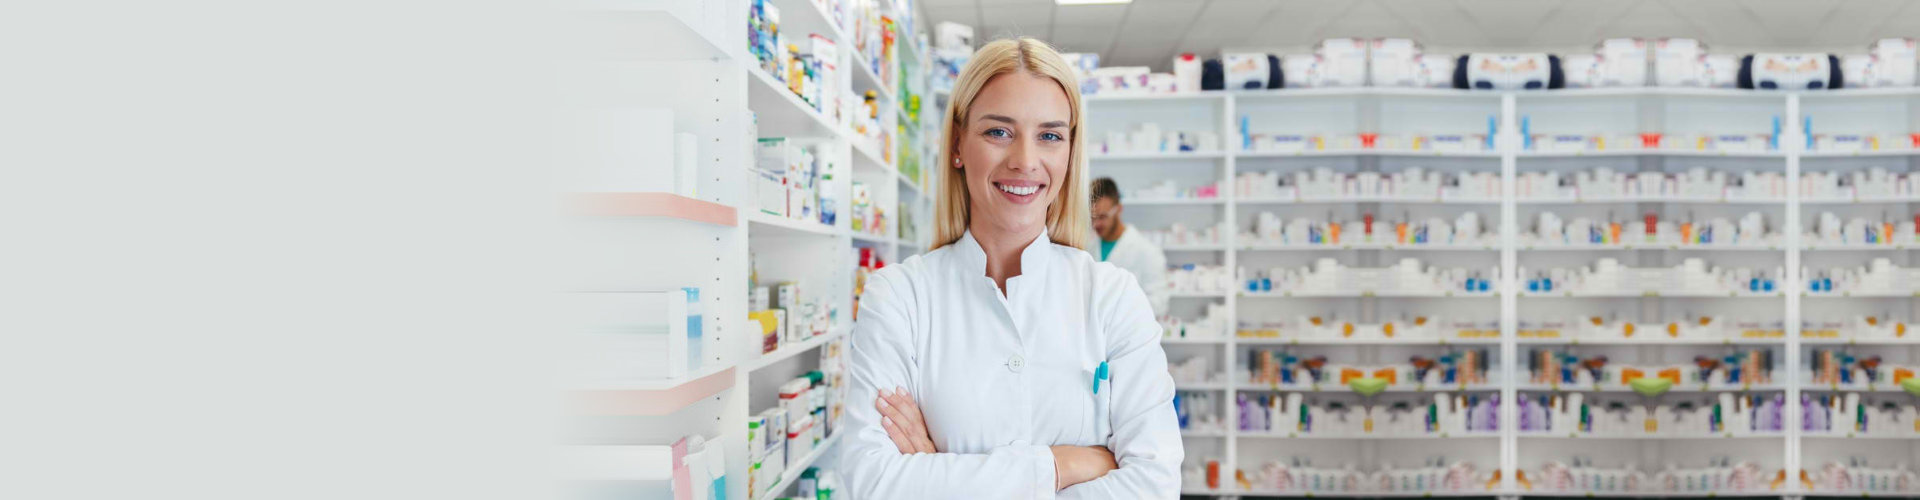 smiling pharmacist